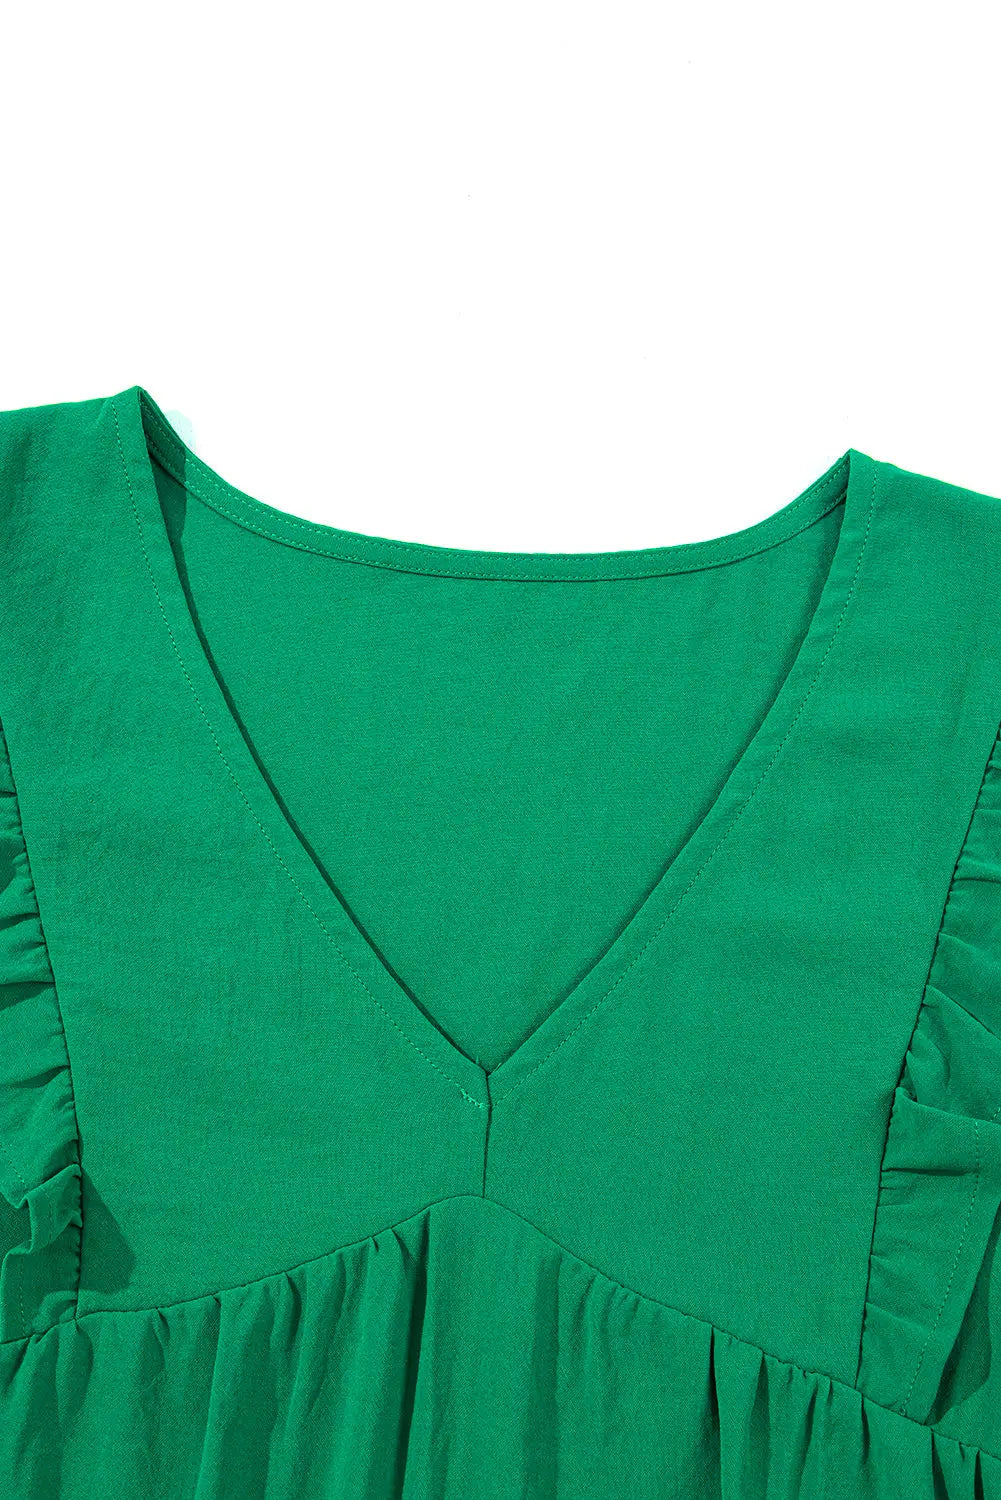 Green ruffle tiered mini dress - dresses